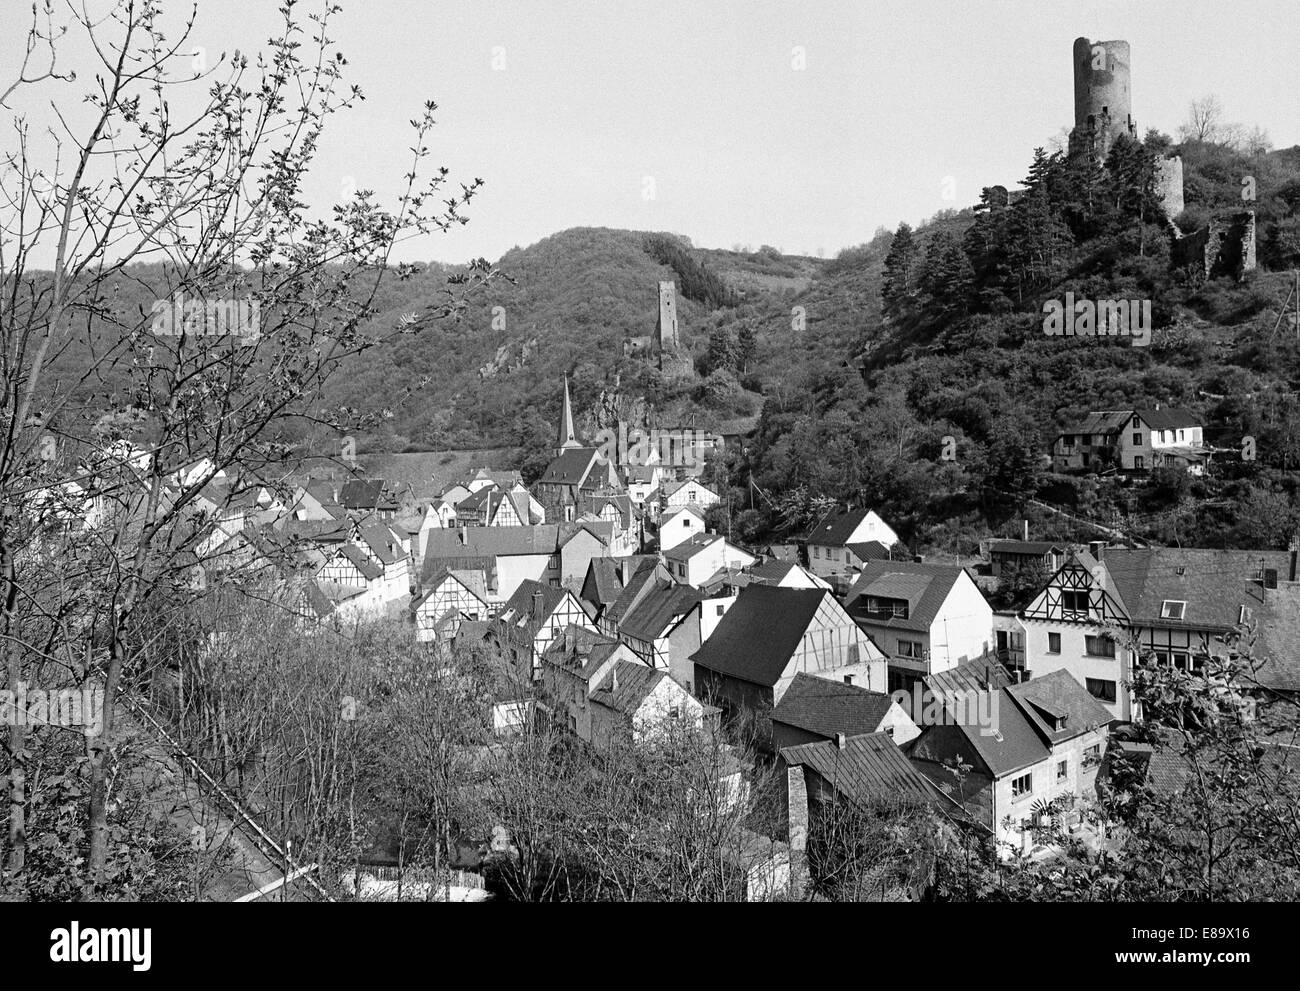 Achtziger Jahre, Elzbachtal und Stadtpanorama mit Philippsburg und Loewenburg in Monreal, Eifel, Rheinland-Pfalz Stock Photo